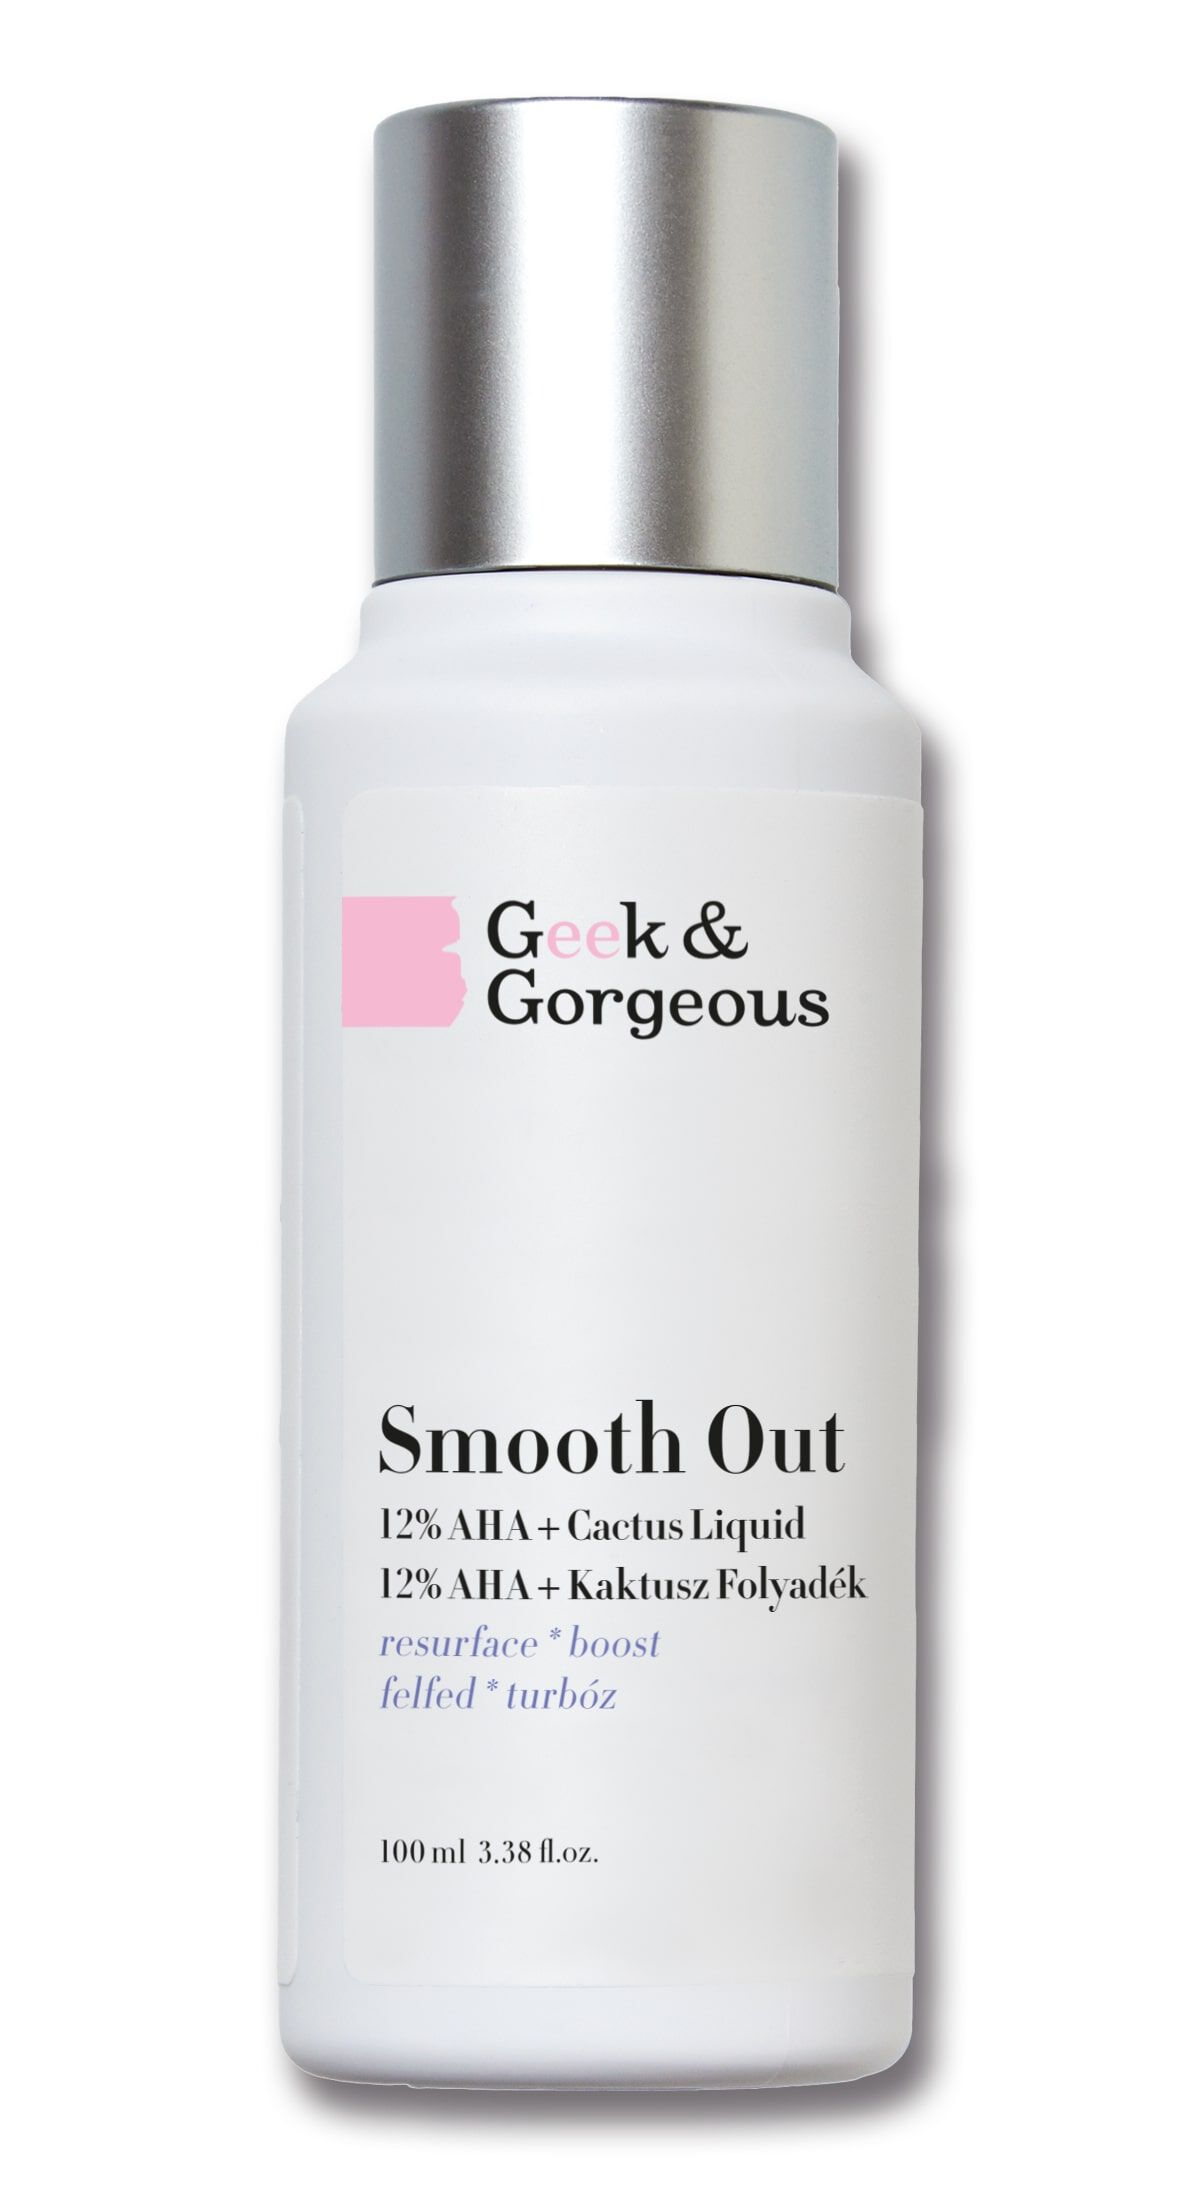 Geek & Gorgeous Smooth Out сильный пилинг для лица с 12% AHA-кислотами и успокаивающей опунцией, 100 мл